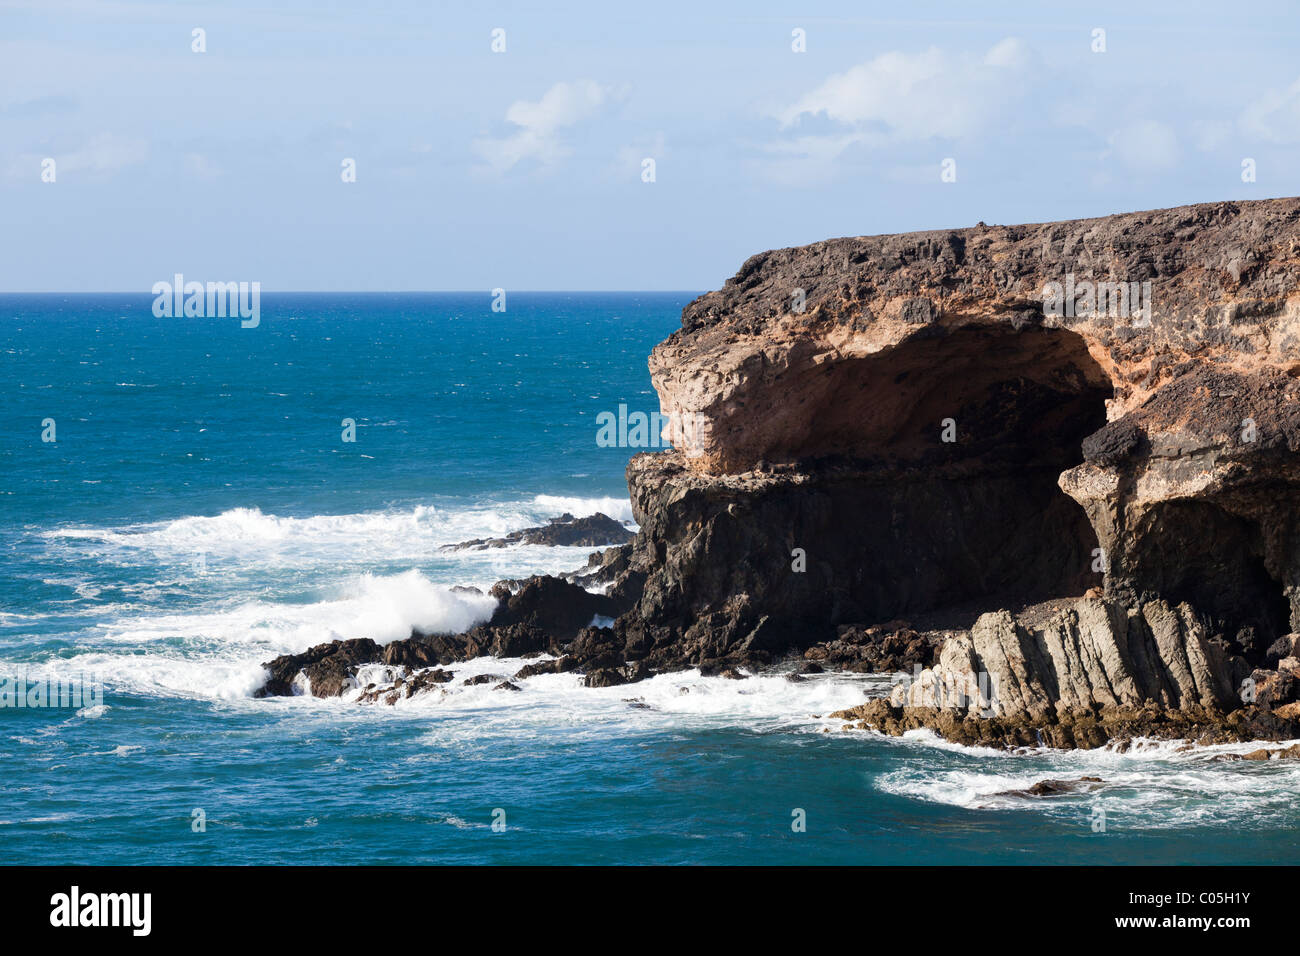 Grottes près de la station balnéaire de Ajuy, sur la côte ouest de l'île canarienne de Fuerteventura Banque D'Images